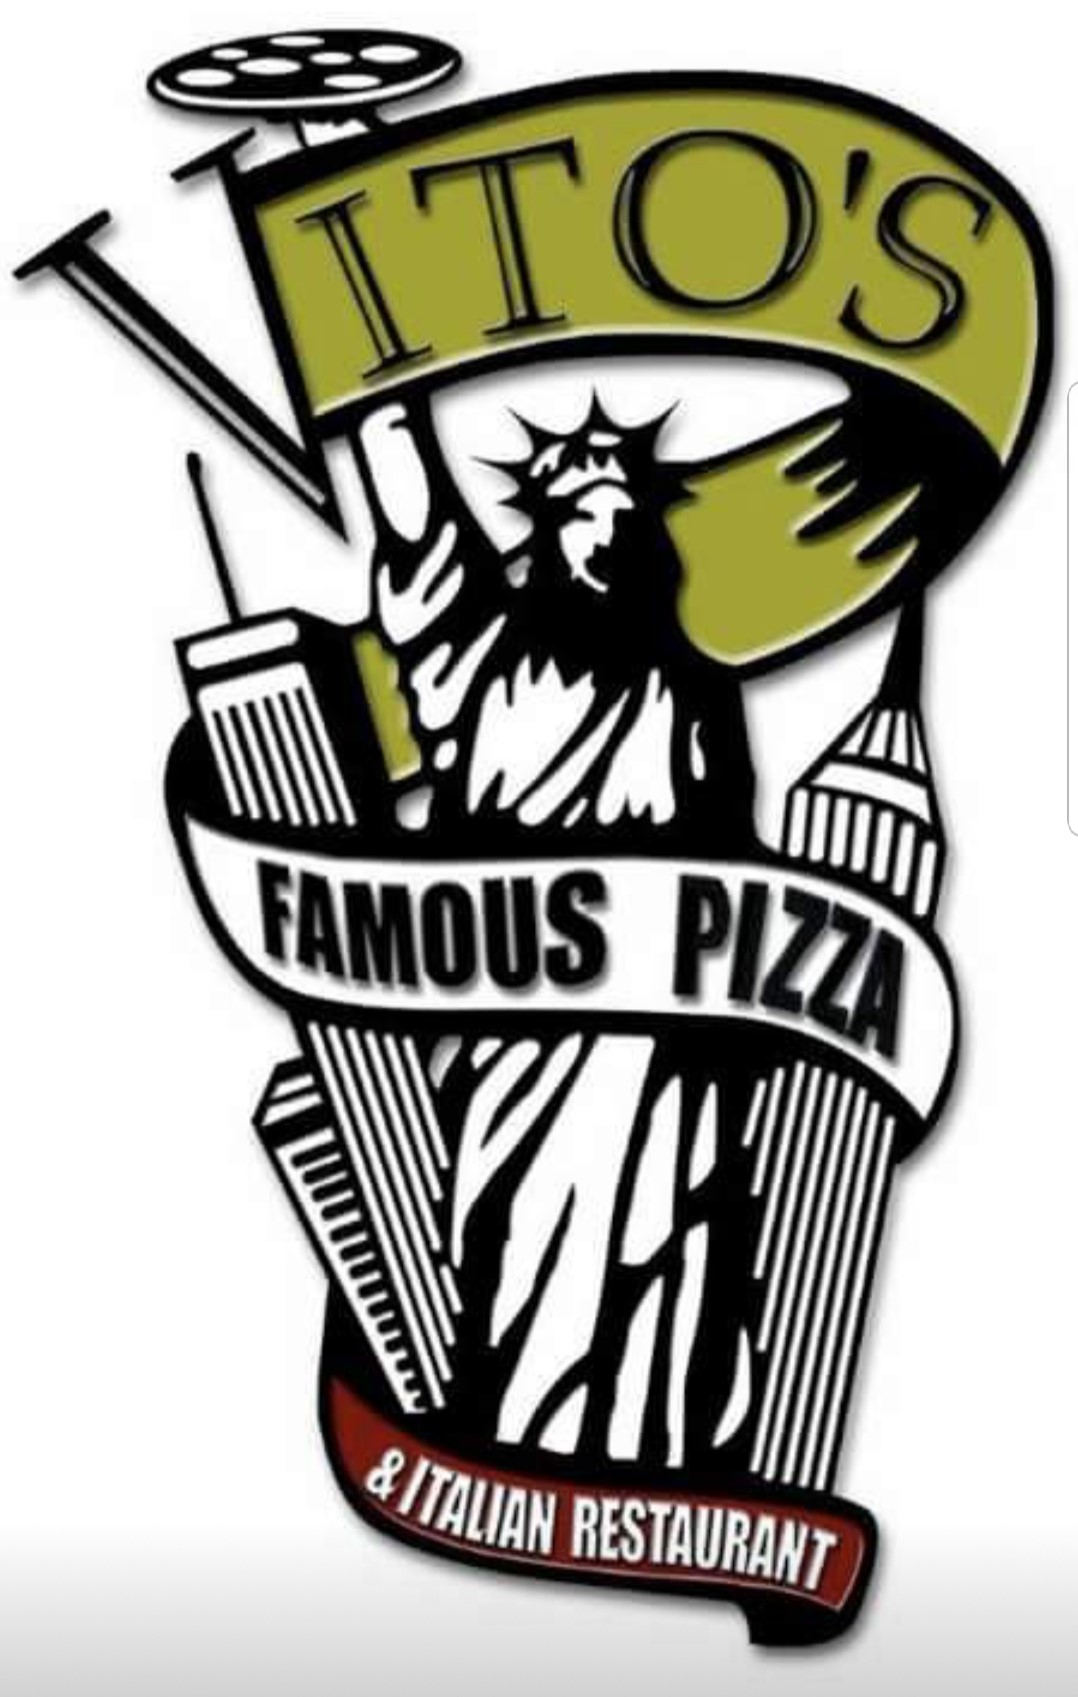 Vito's Famous Pizza